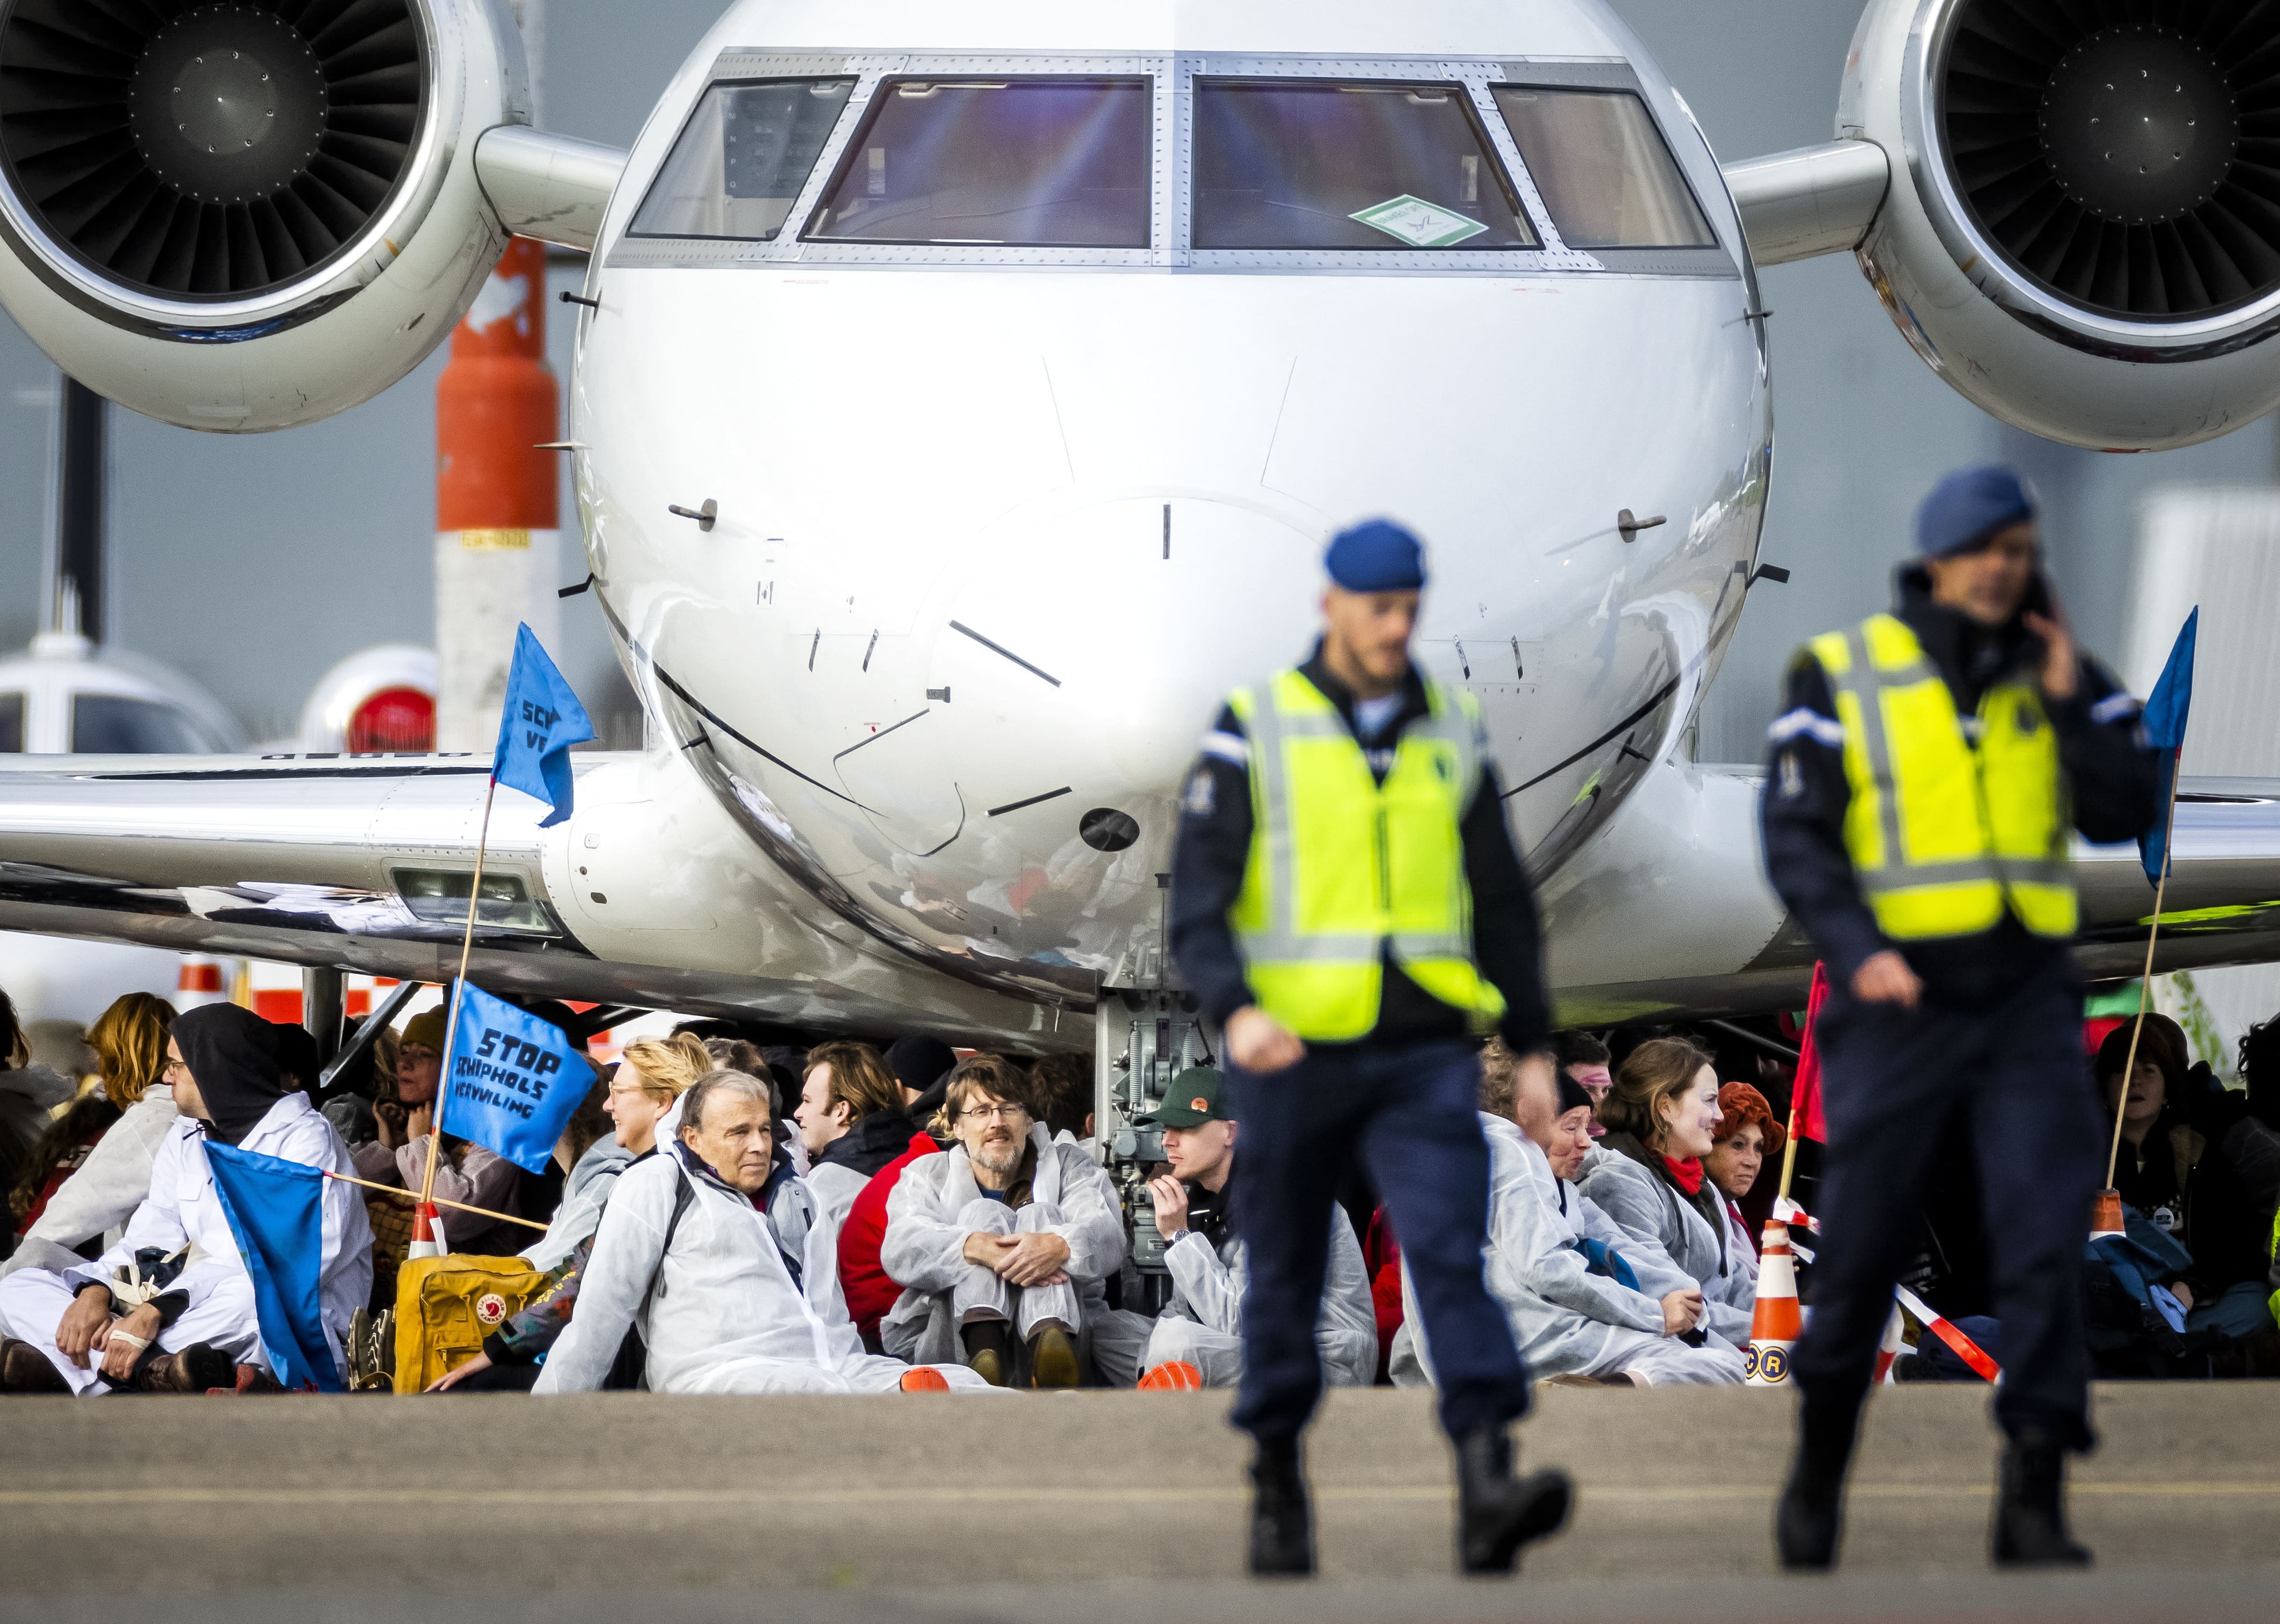 Nederland: Klimaatactivisten nemen luchthaven in beslag om te voorkomen dat privéjets opstijgen